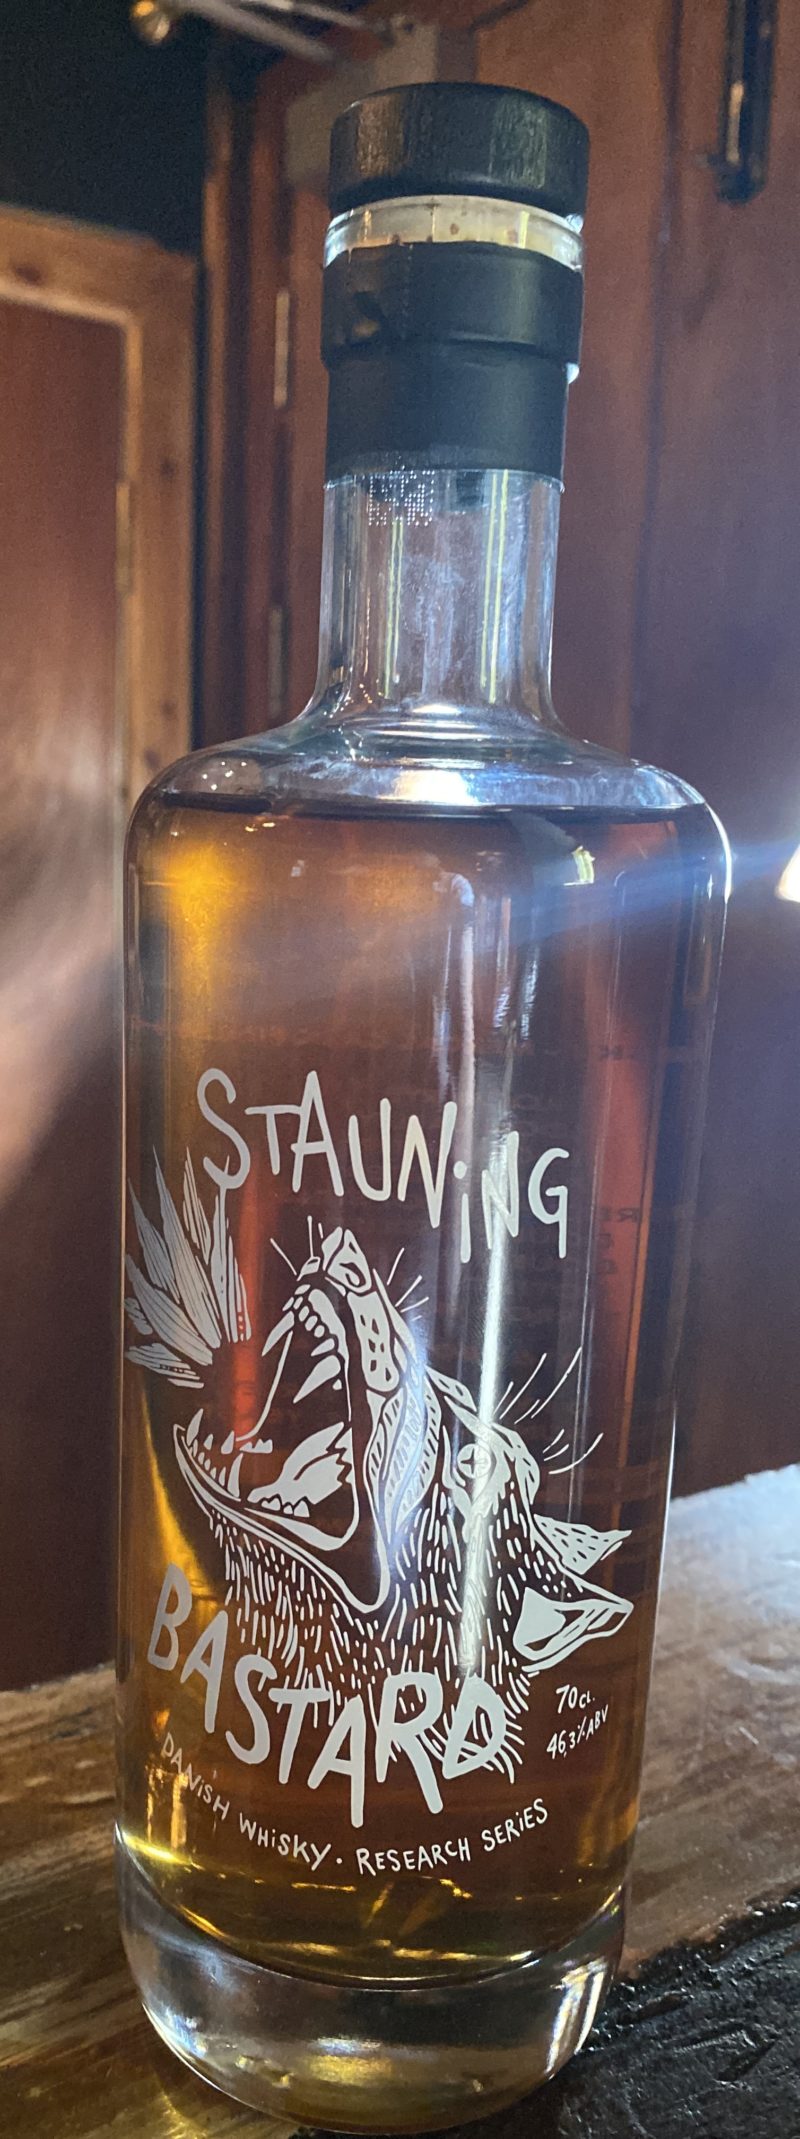 stauning danish whisky